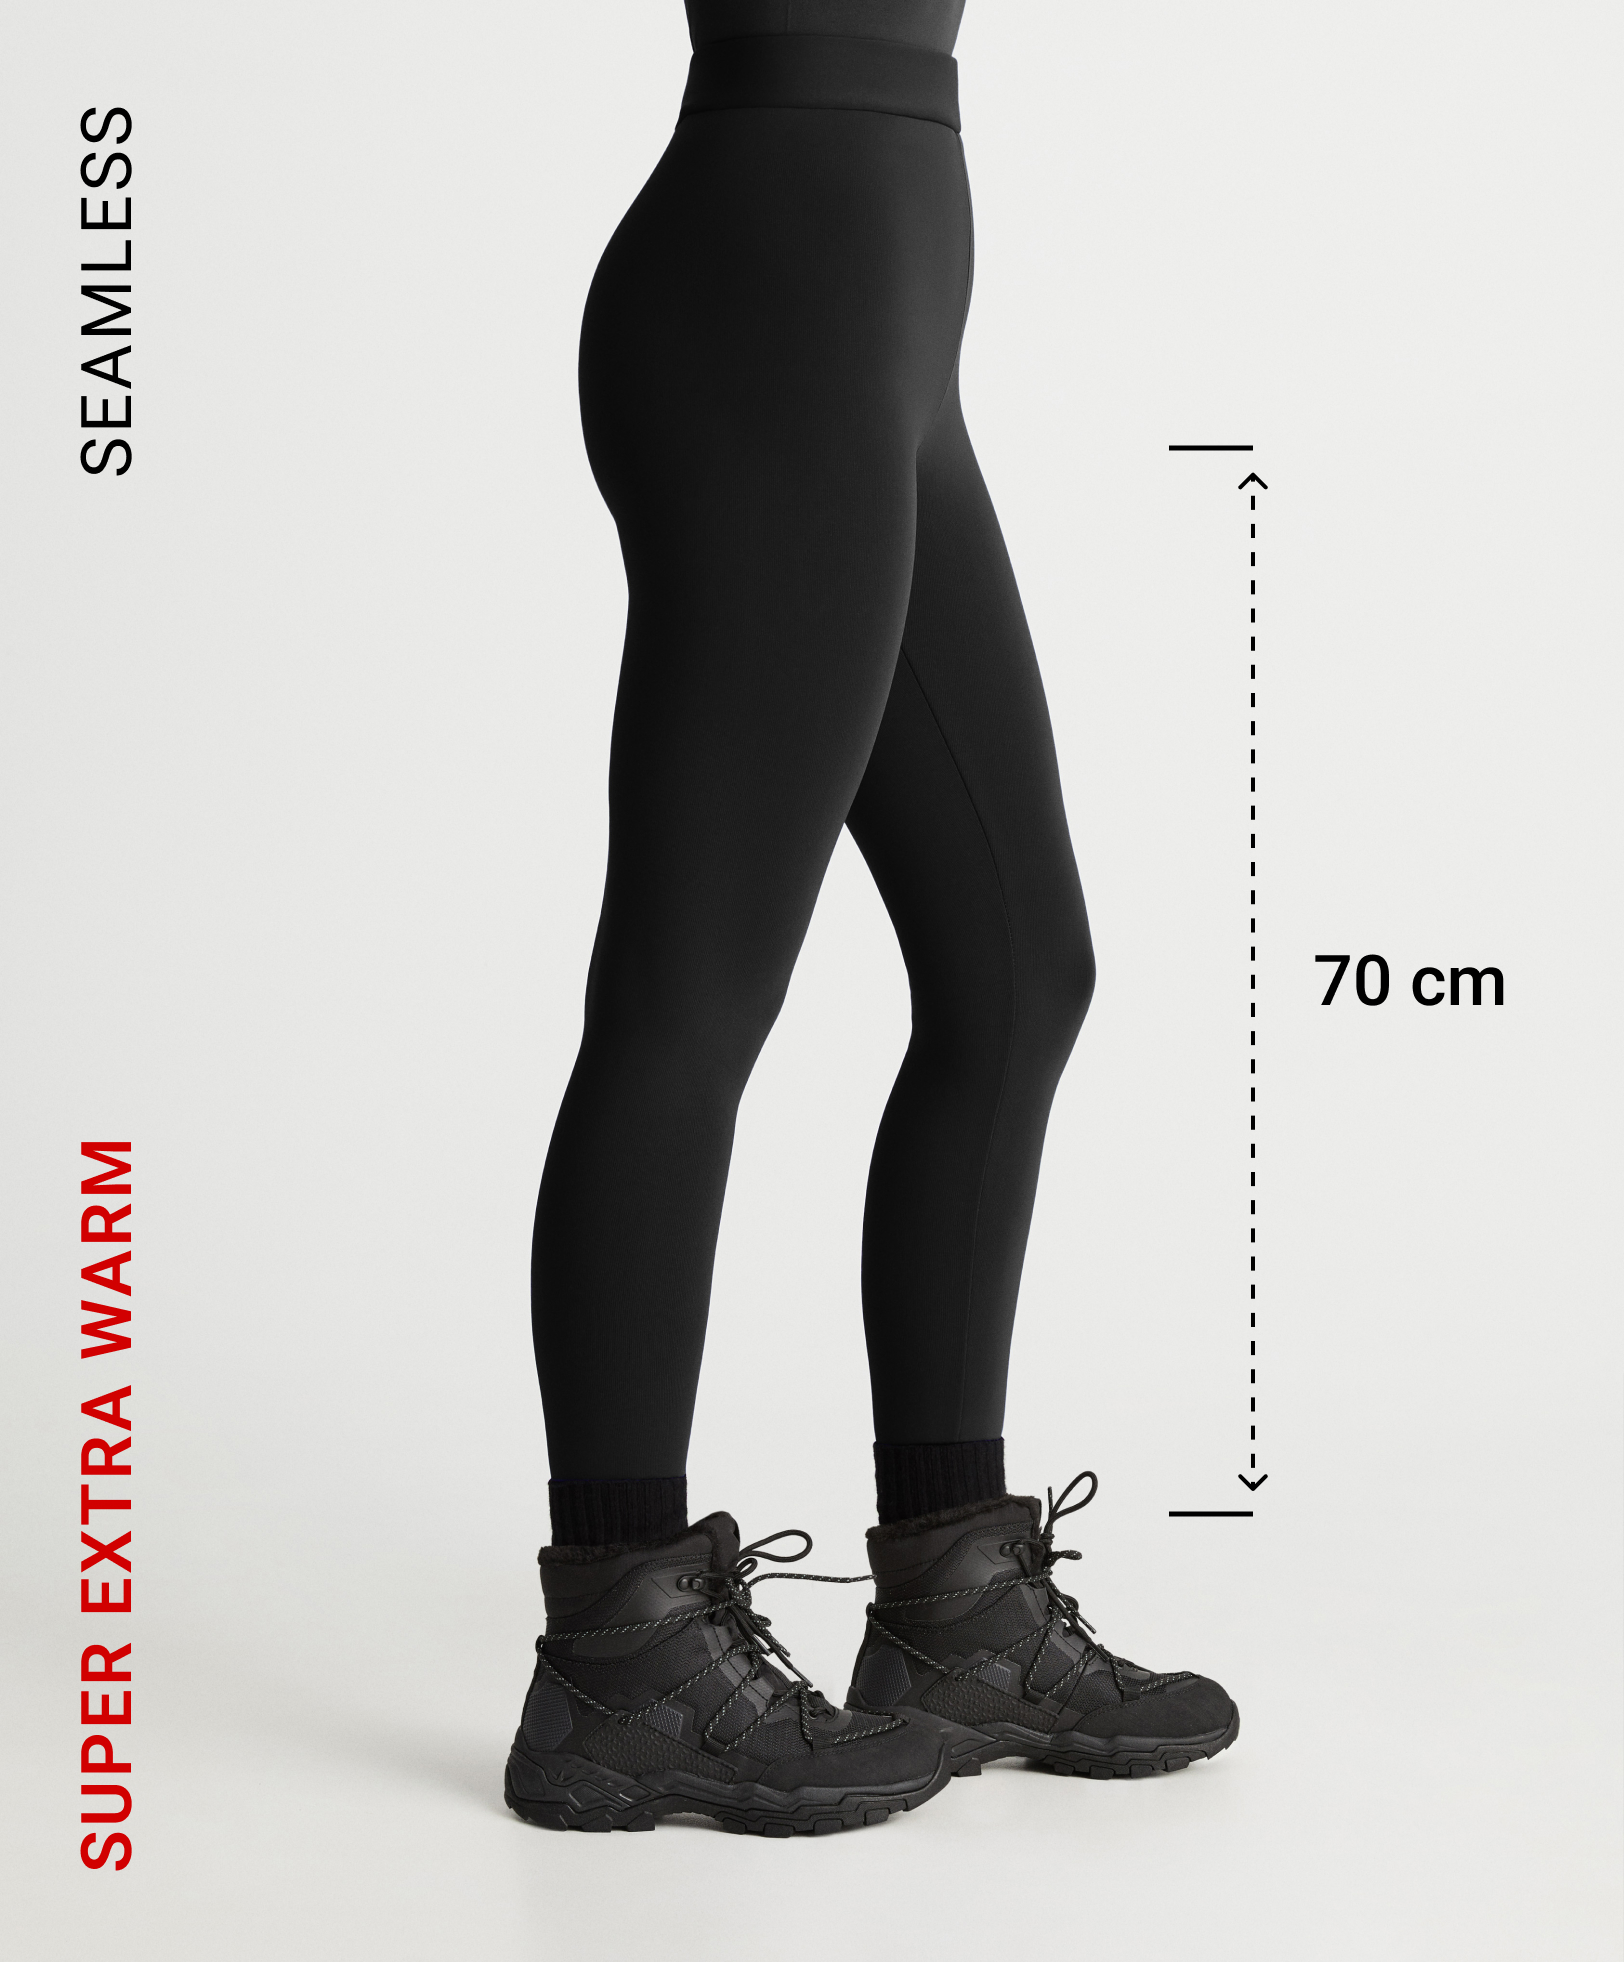 Knöchellange Leggings in Super-Extra-Warm-Qualität, 70 cm